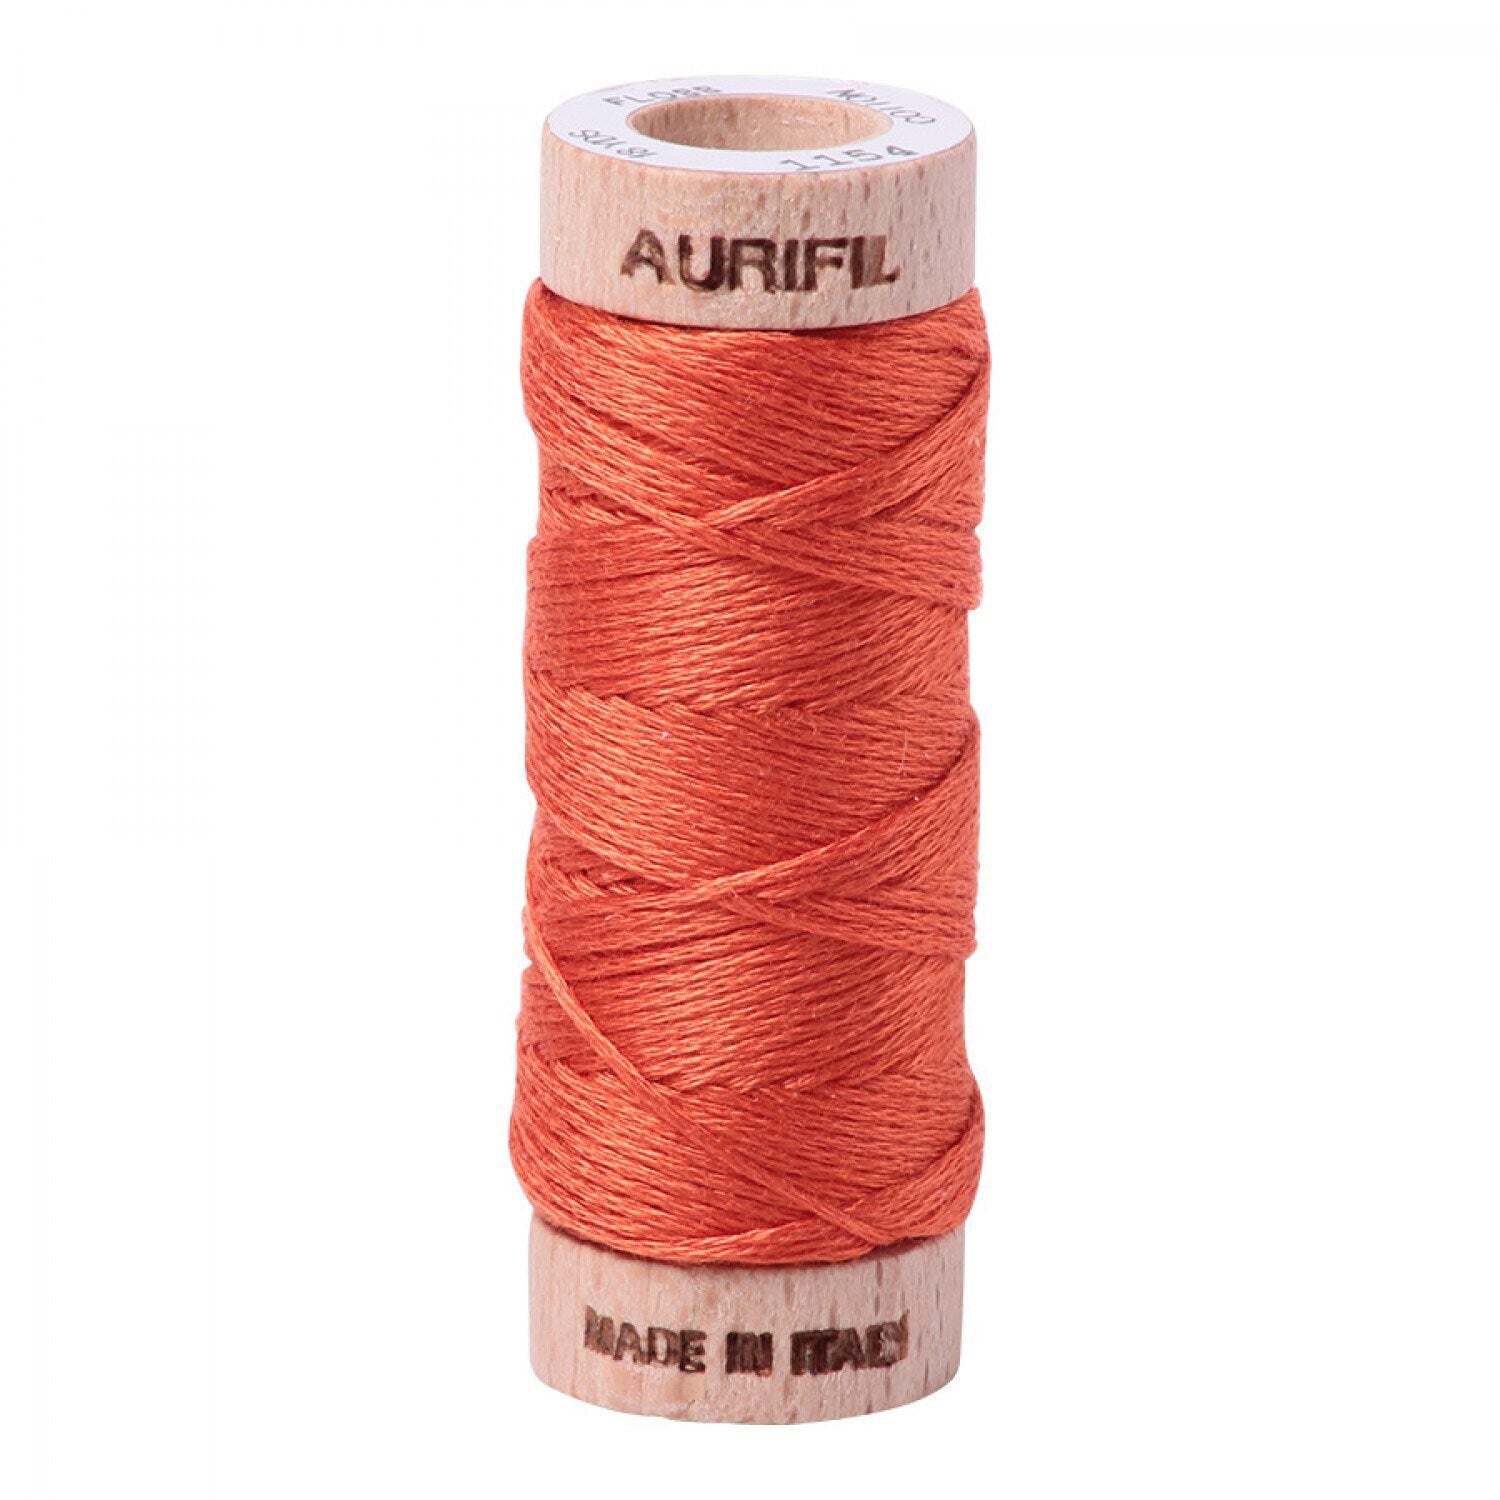 Dusty Orange Aurifil Floss - 1154 - Aurifloss